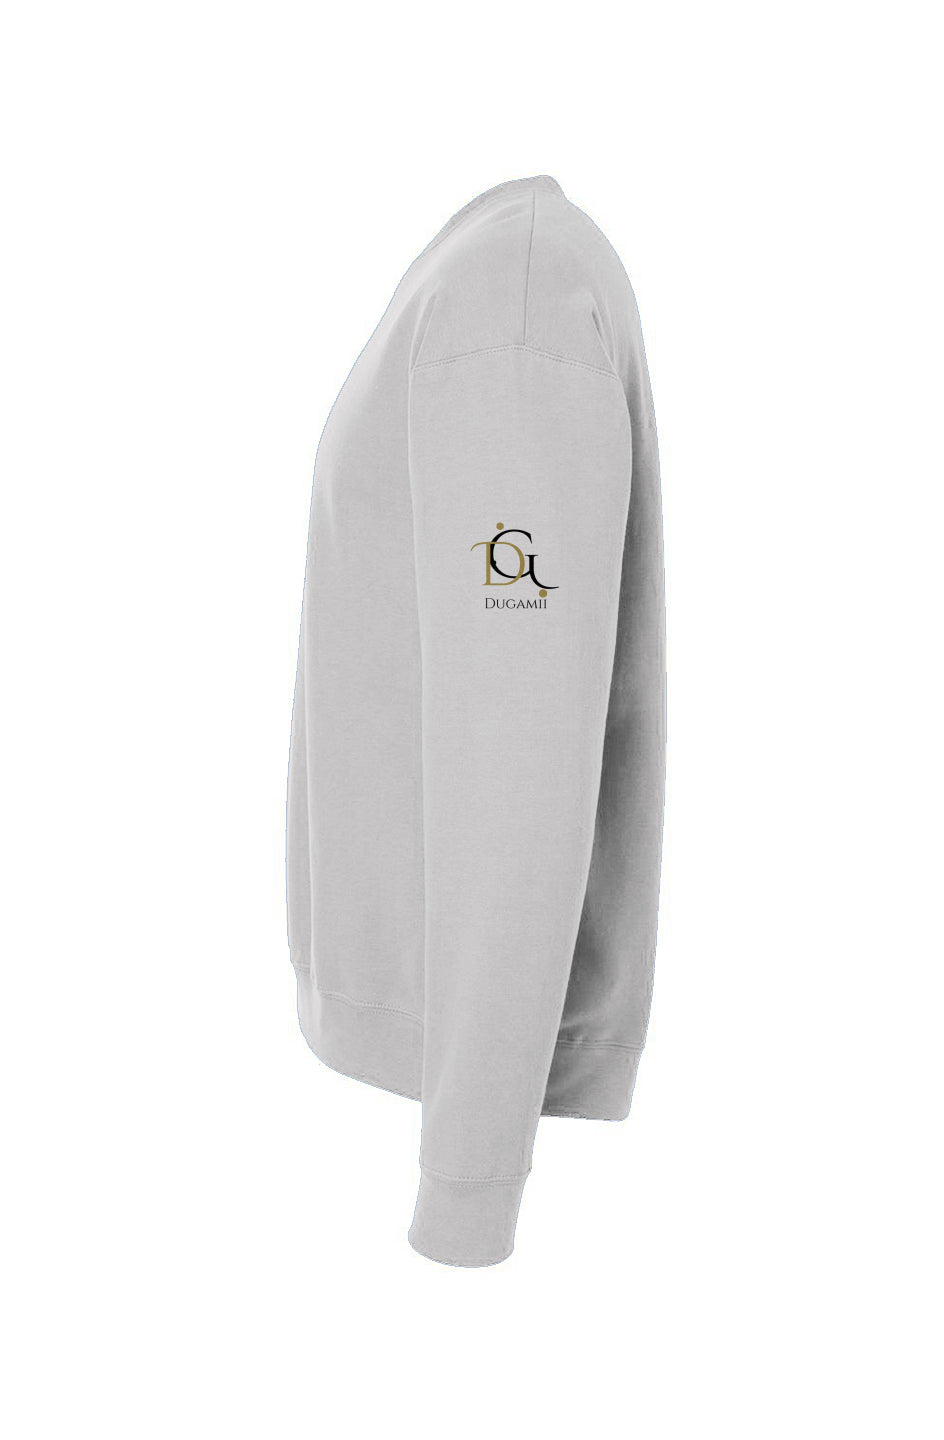 DuGamii "King's Crown" White Fleece Sweatshirt